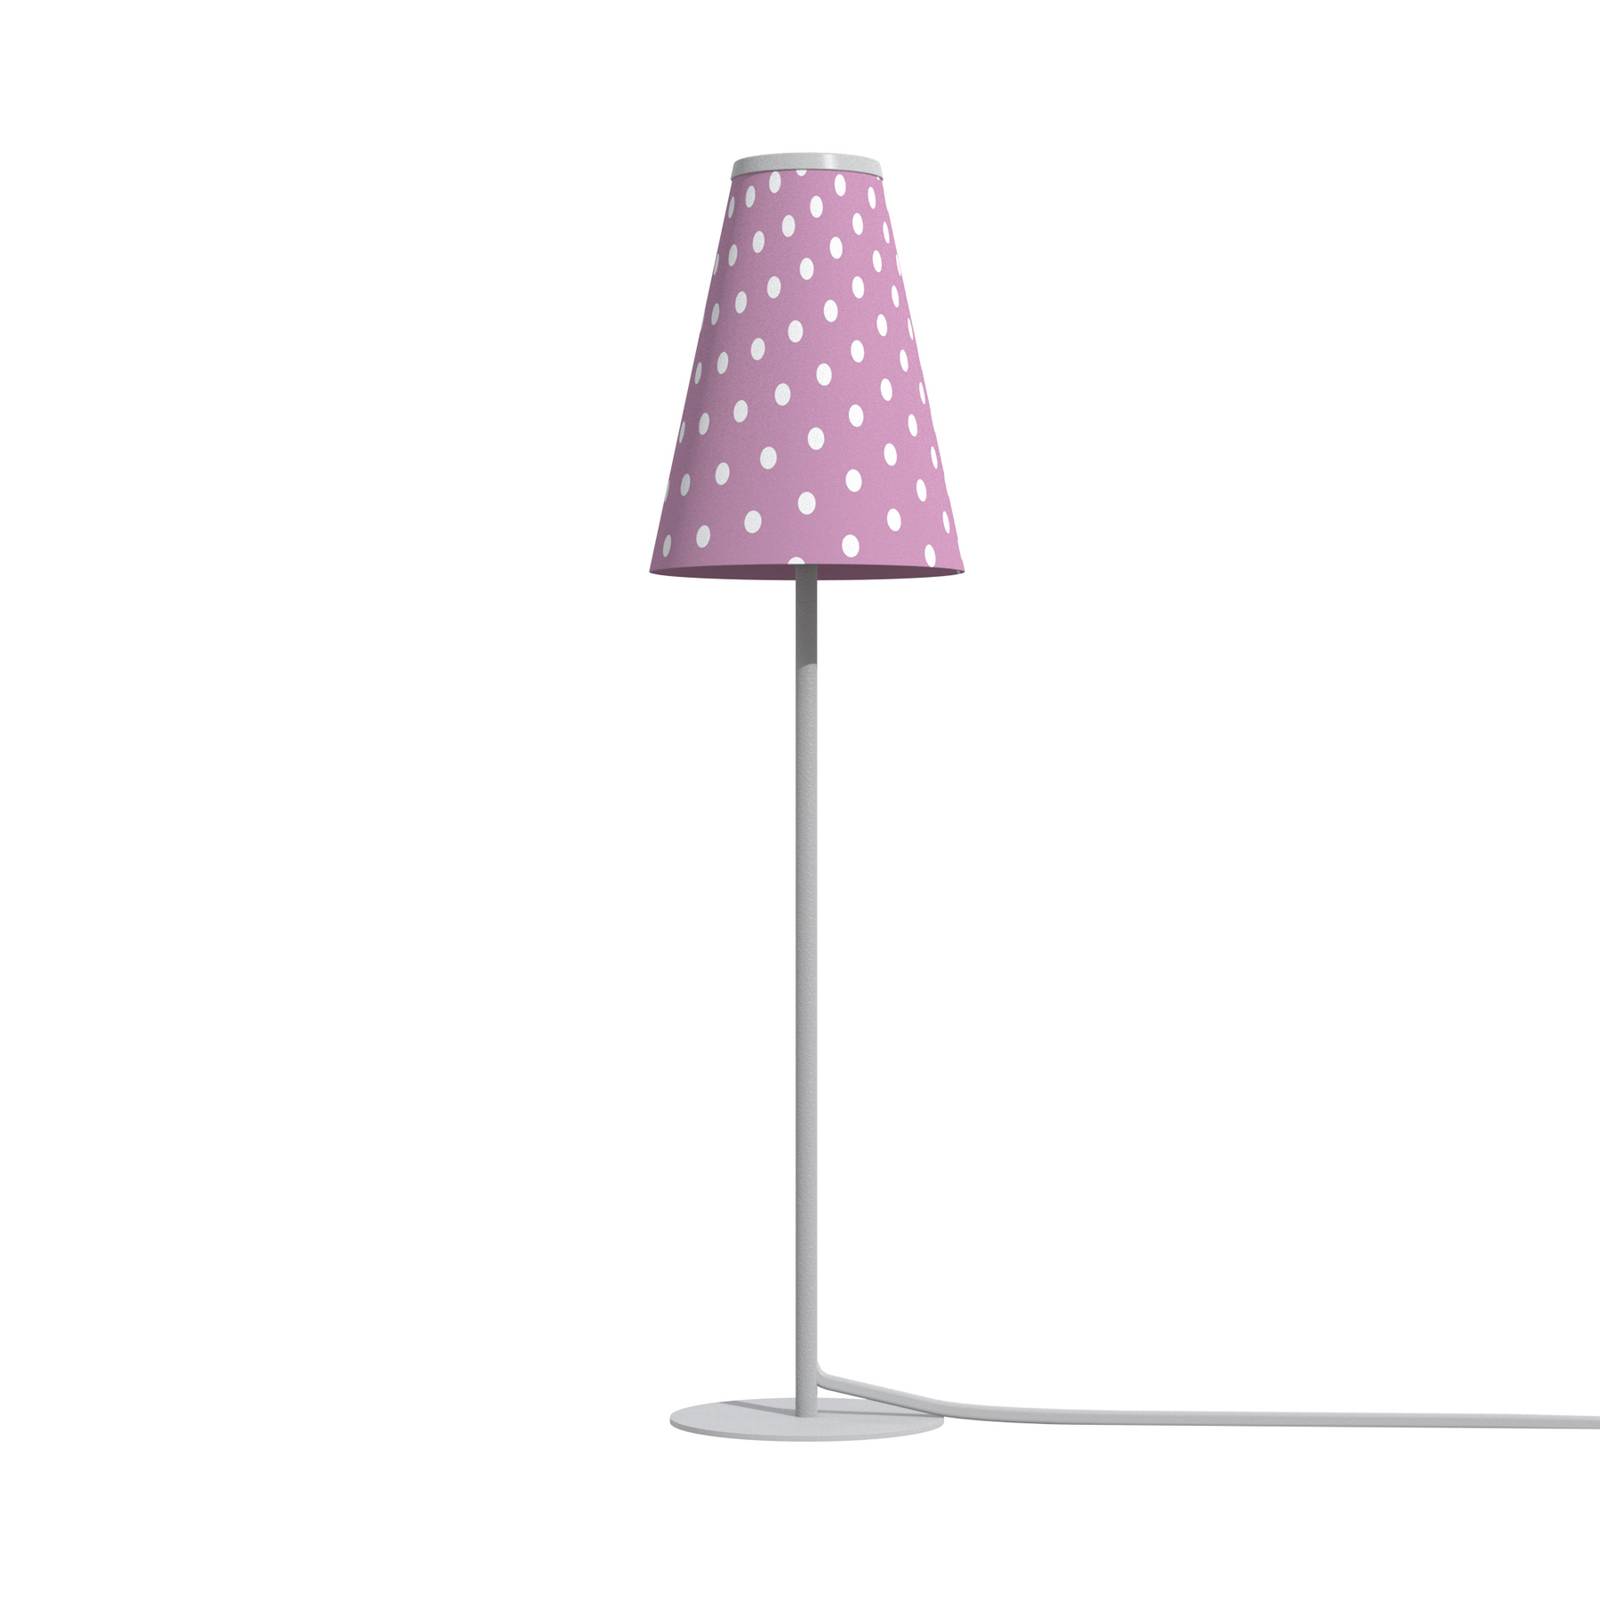 Euluna Bordlampe Trifle pink/hvid med prikker